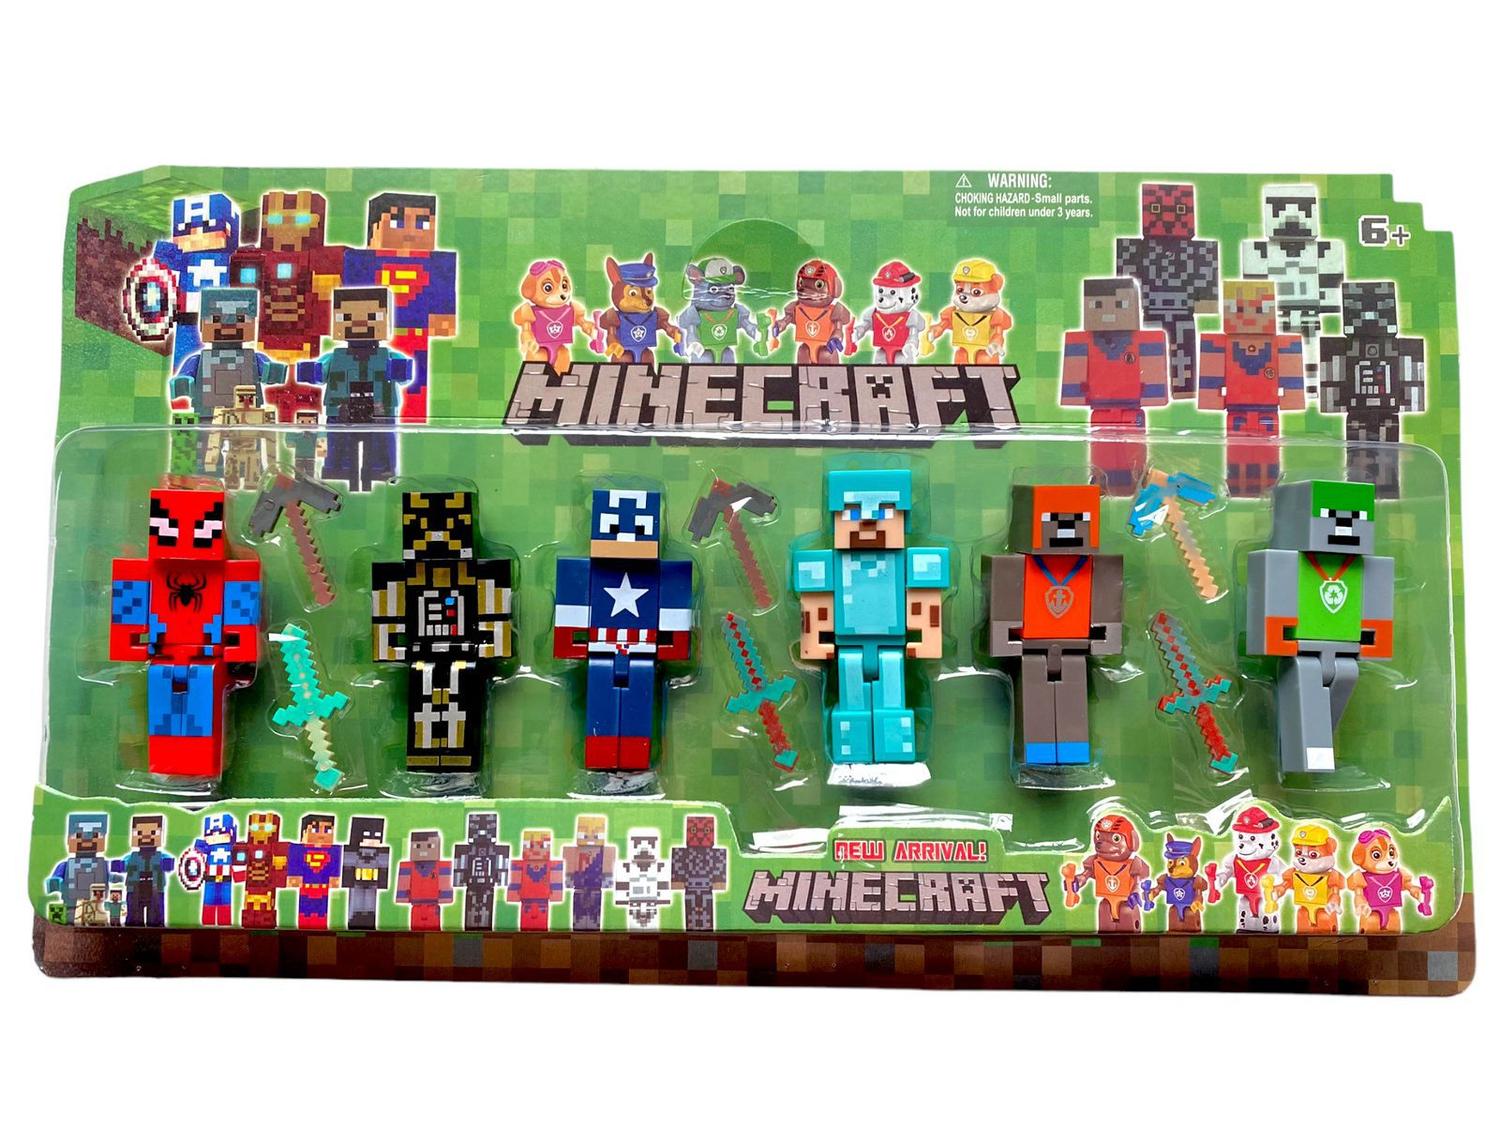 Kit Brinquedo Cartela Bonecos Minecraft E Itens 10 Peças novidades